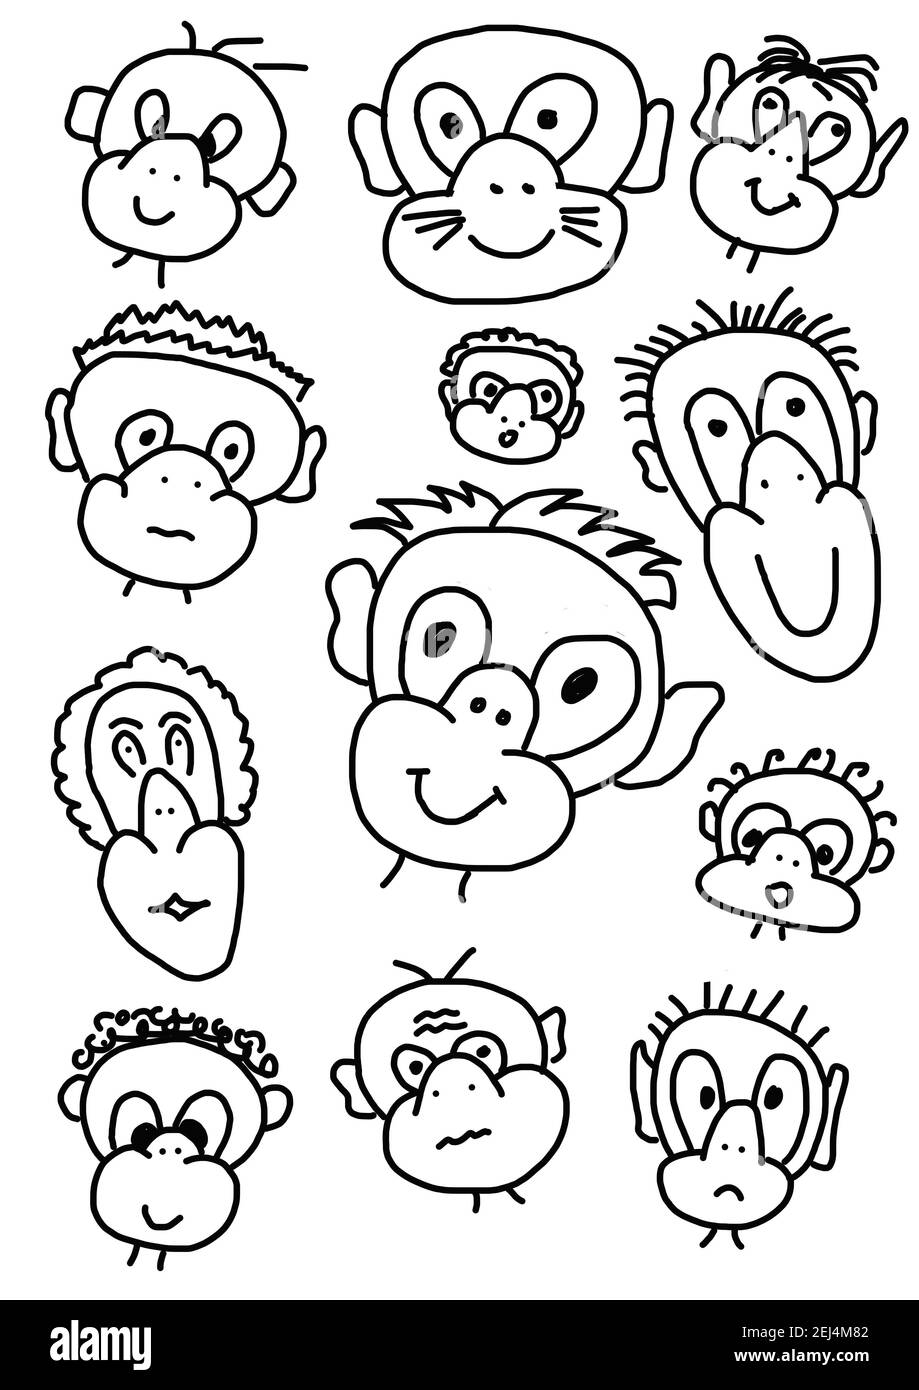 How To Draw Monkey | Monkey Drawing | बंदर का चित्र आसानी से बनाना सीखे |  Monkey | Smart Kids Art - YouTube